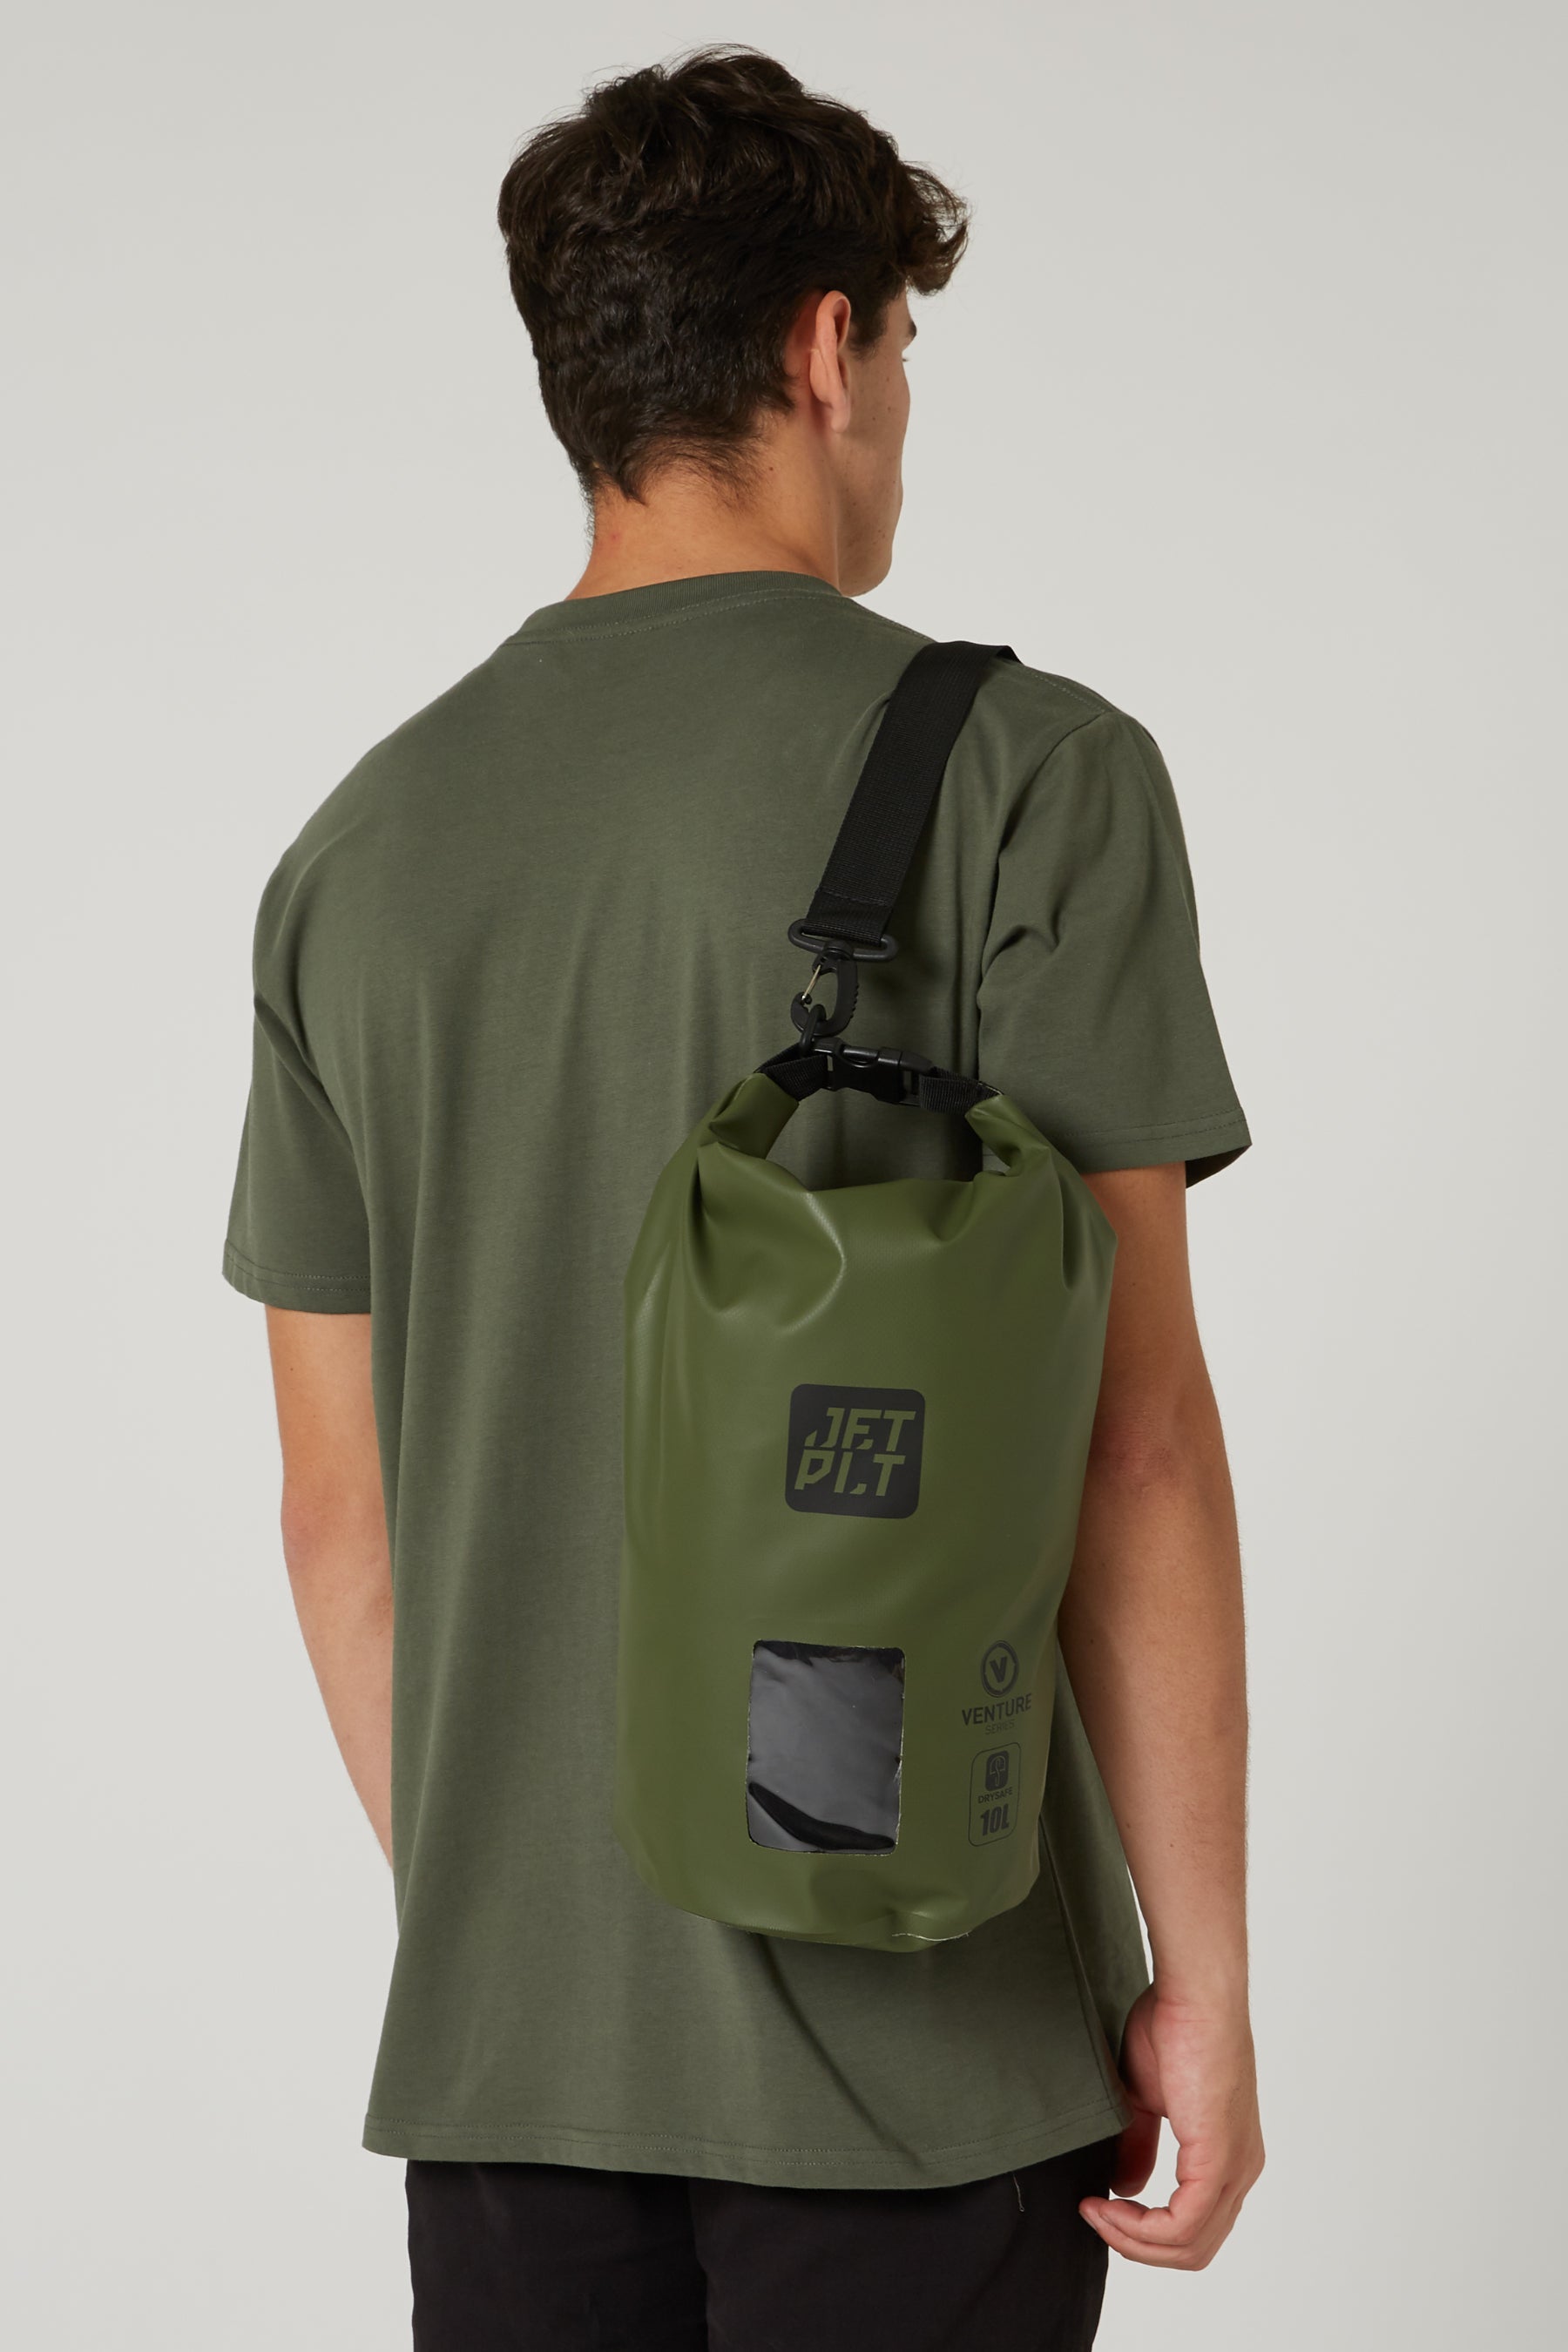 Jetpilot Venture 10l Drysafe Backpack - Sage Lifestyle 1